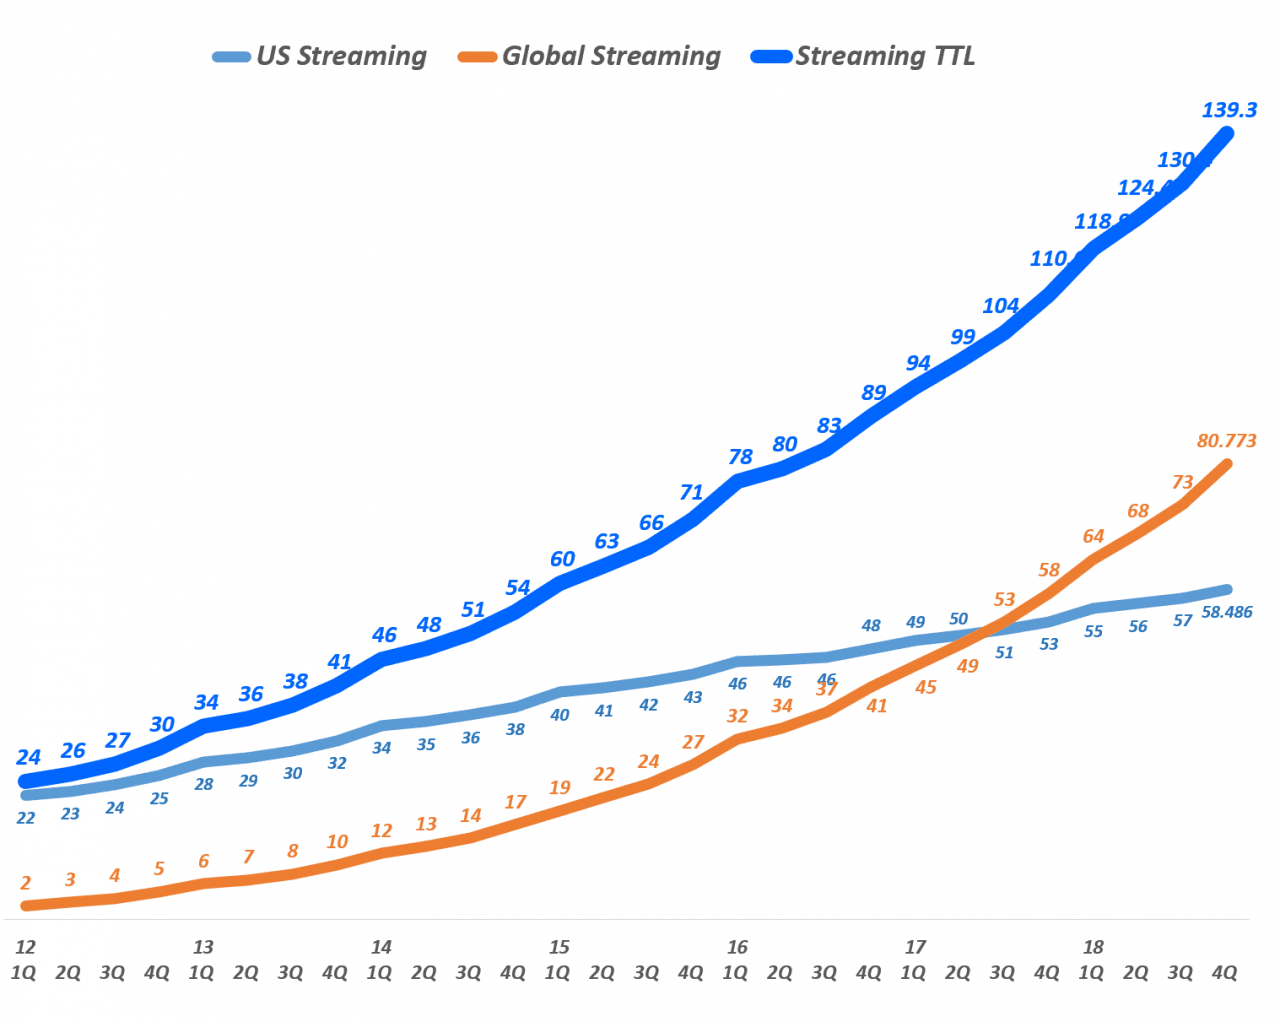 넷플릭스 분기별 스트리밍 서비스 유료 구독자 수 추이(2012년 1분기 ~ 2018년 4분기), Quarterly Netflix Streaming Service Global Subscriber additions(M), Graph by Happist